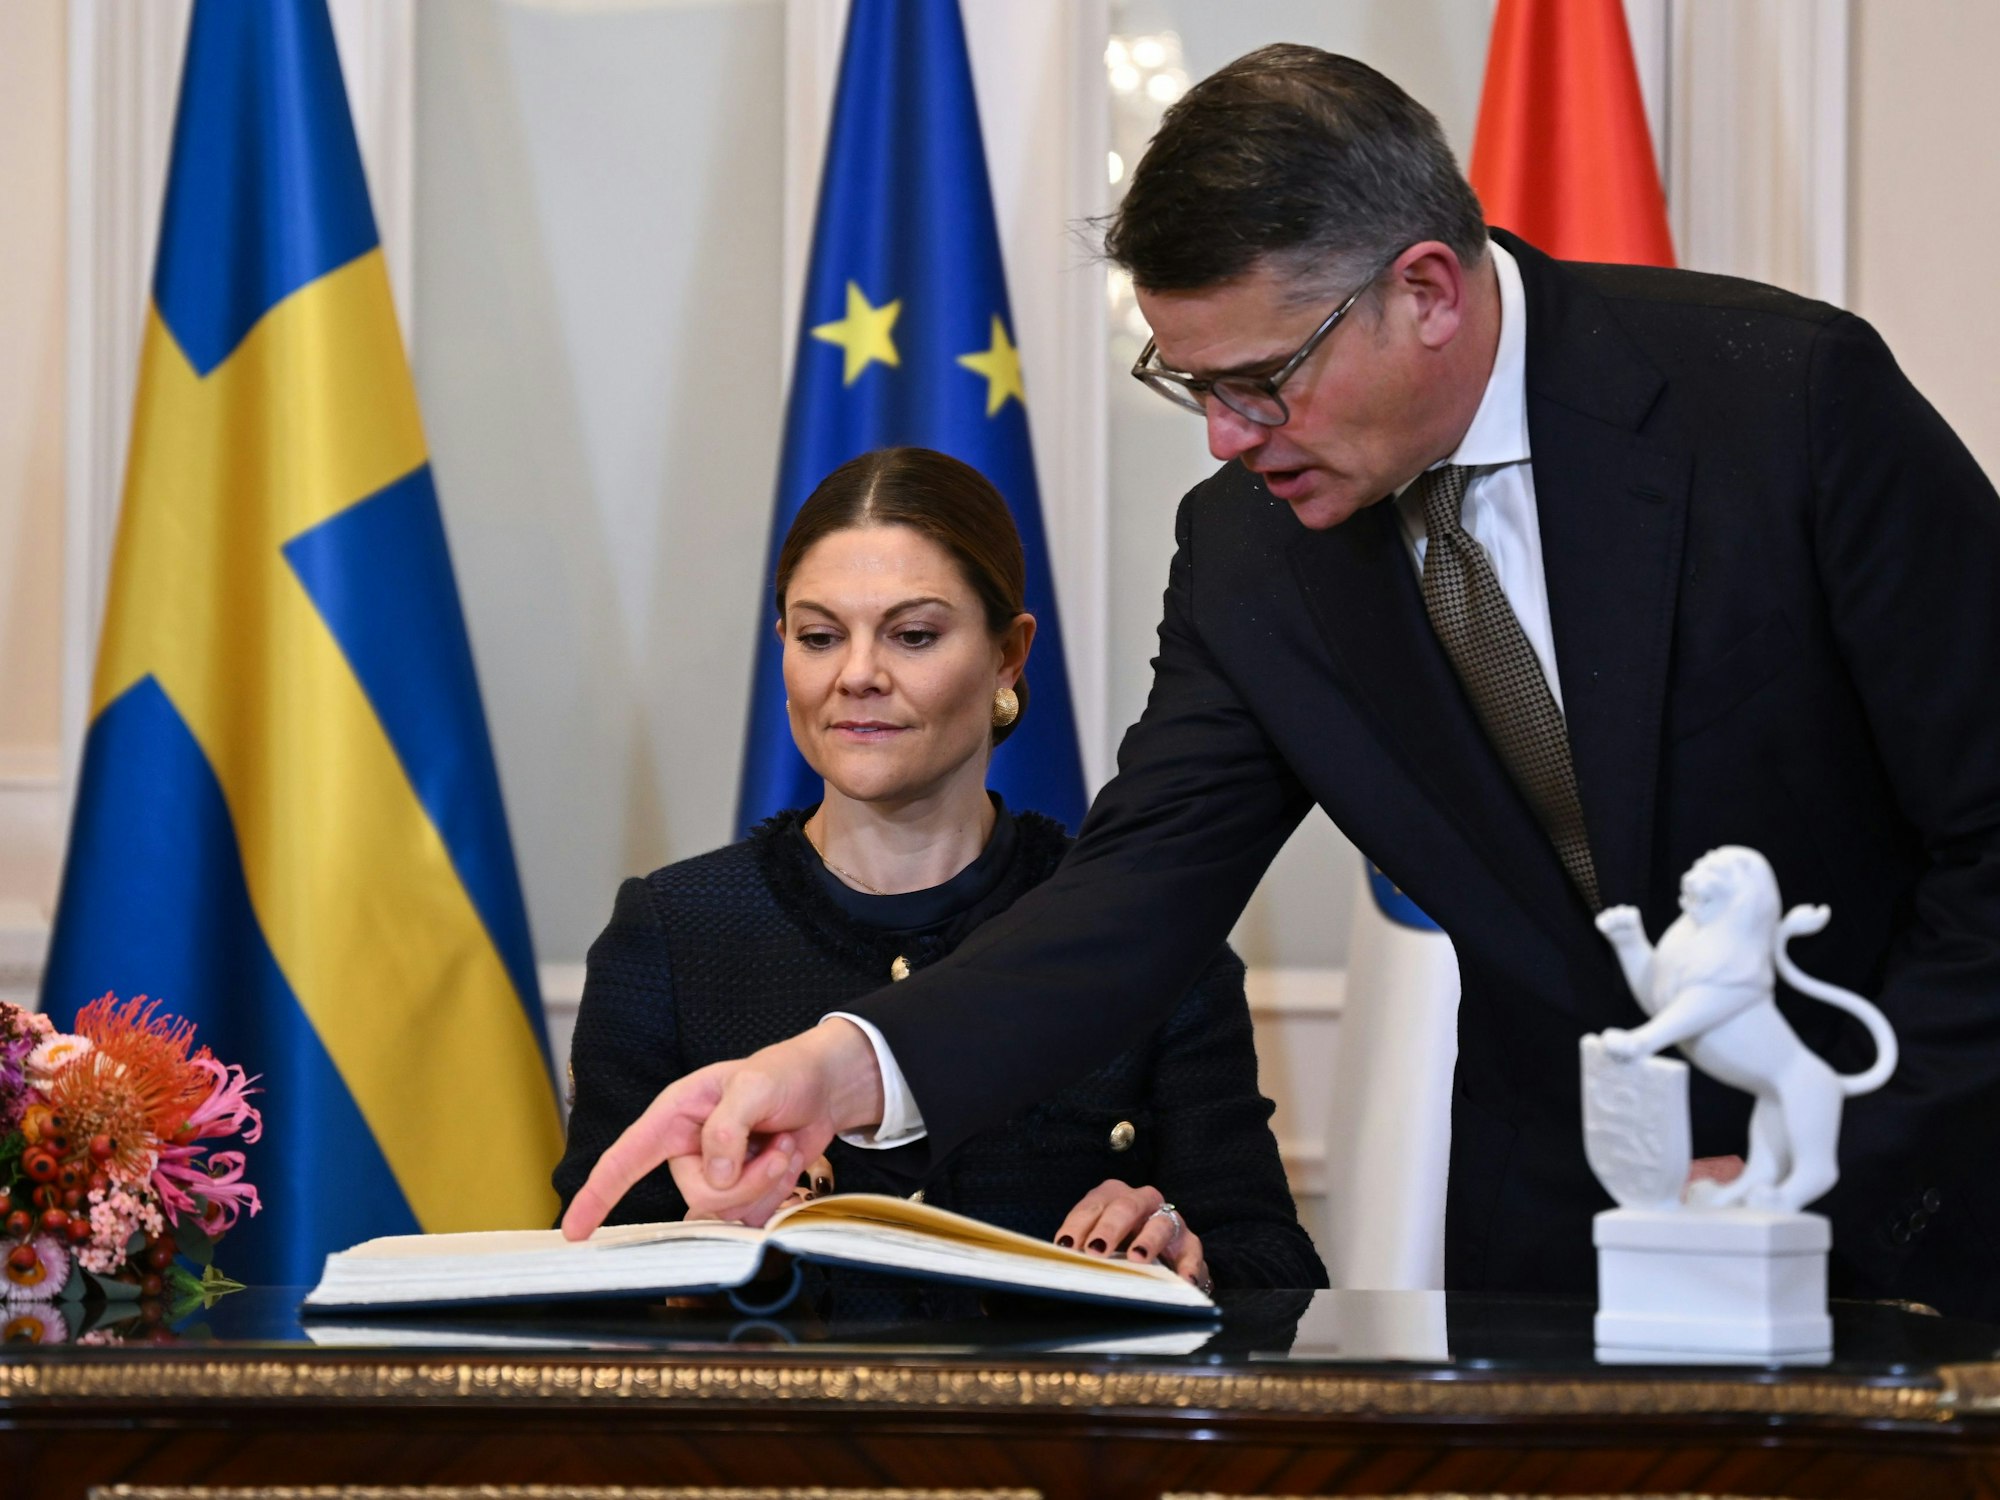 Kronprinzessin Victoria von Schweden trägt sich bei ihrem Besuch in der Hessischen Staatskanzlei im Beisein von Boris Rhein (CDU), Ministerpräsident von Hessen, in das Gästebuch ein.